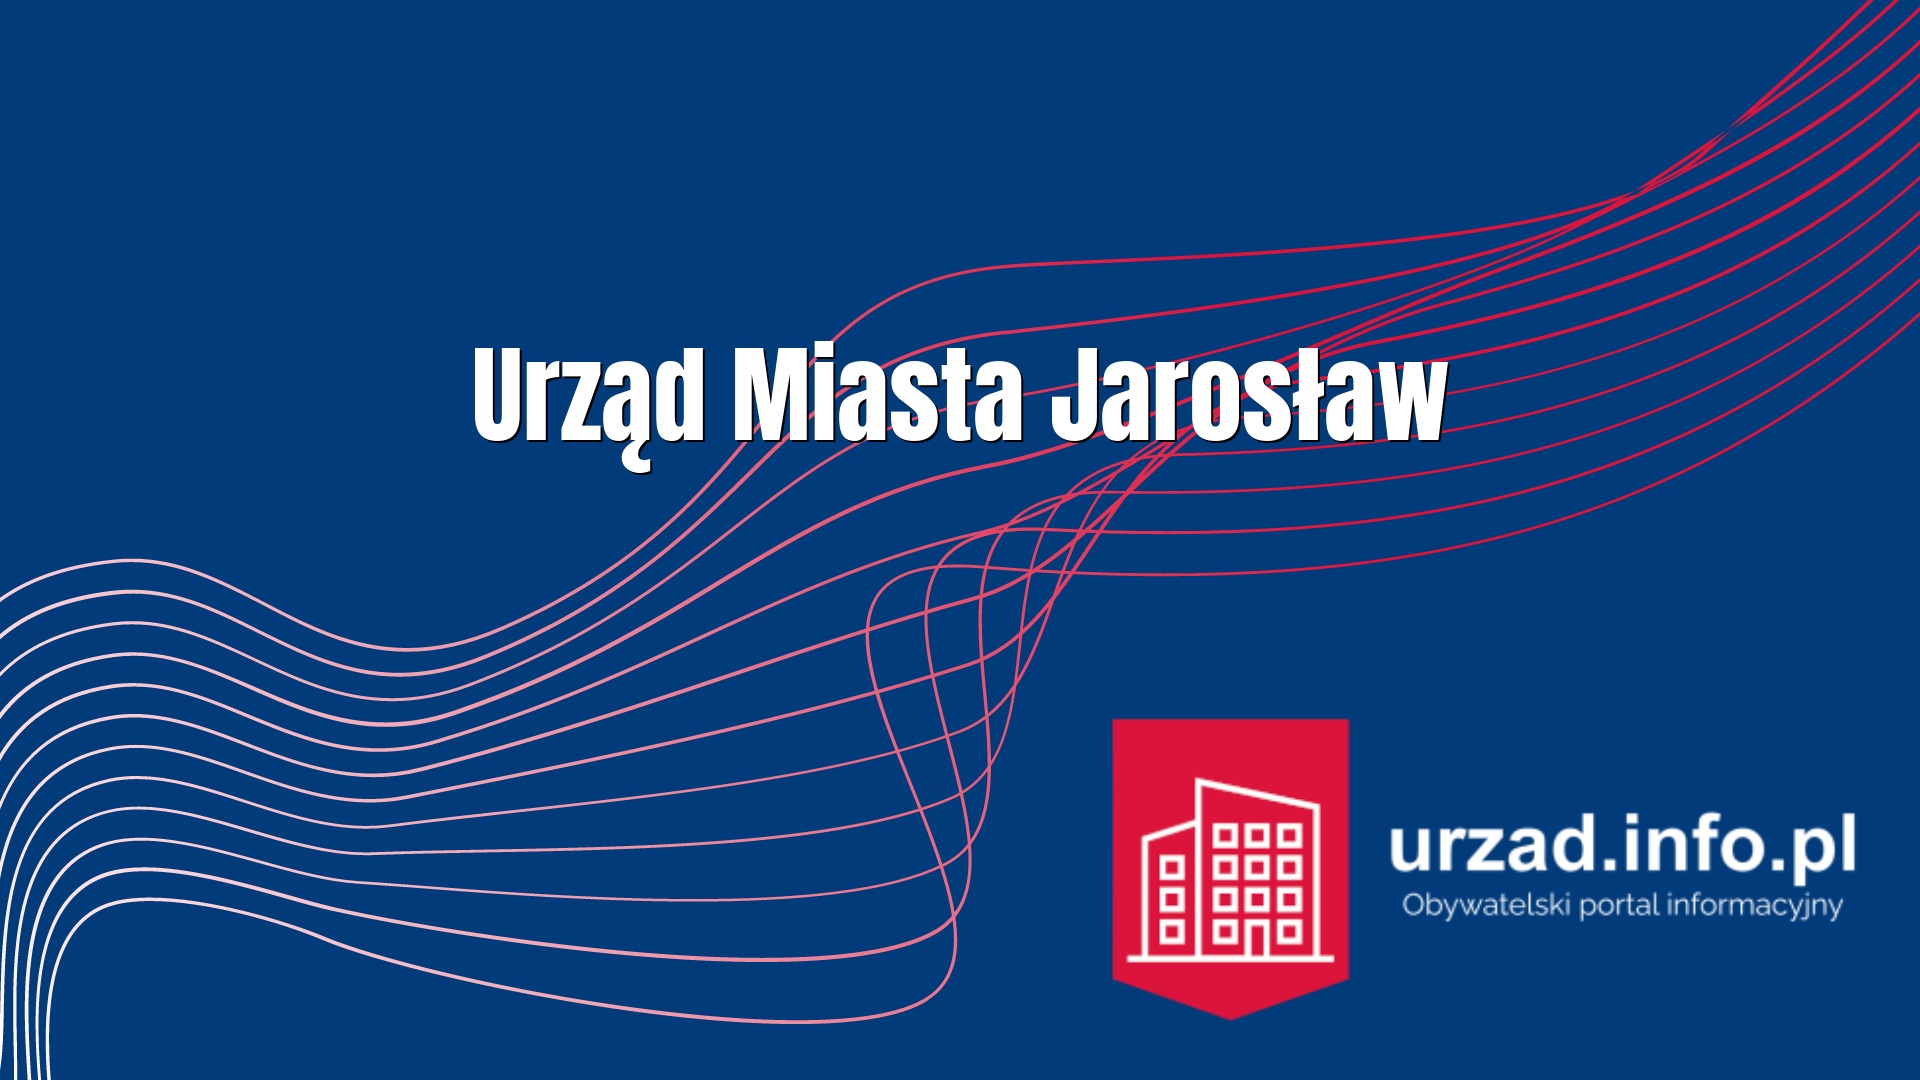 Urząd Miasta Jarosław